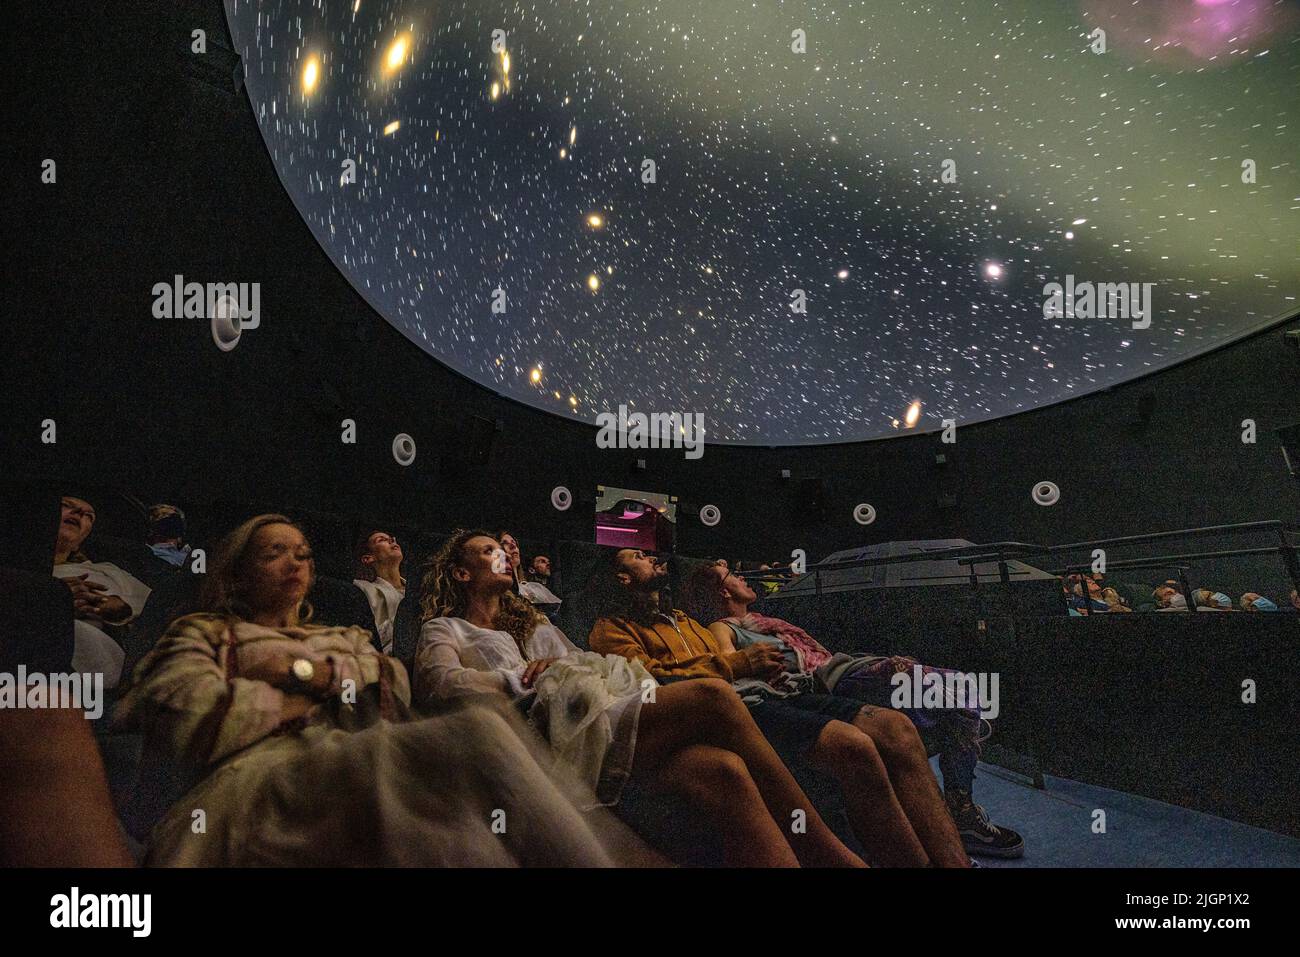 Turisti al planetario 'Ull del Montsec' durante la proiezione del video sulla notte, la Via Lattea e l'astronomia (Àger, Lleida, Spagna) Foto Stock